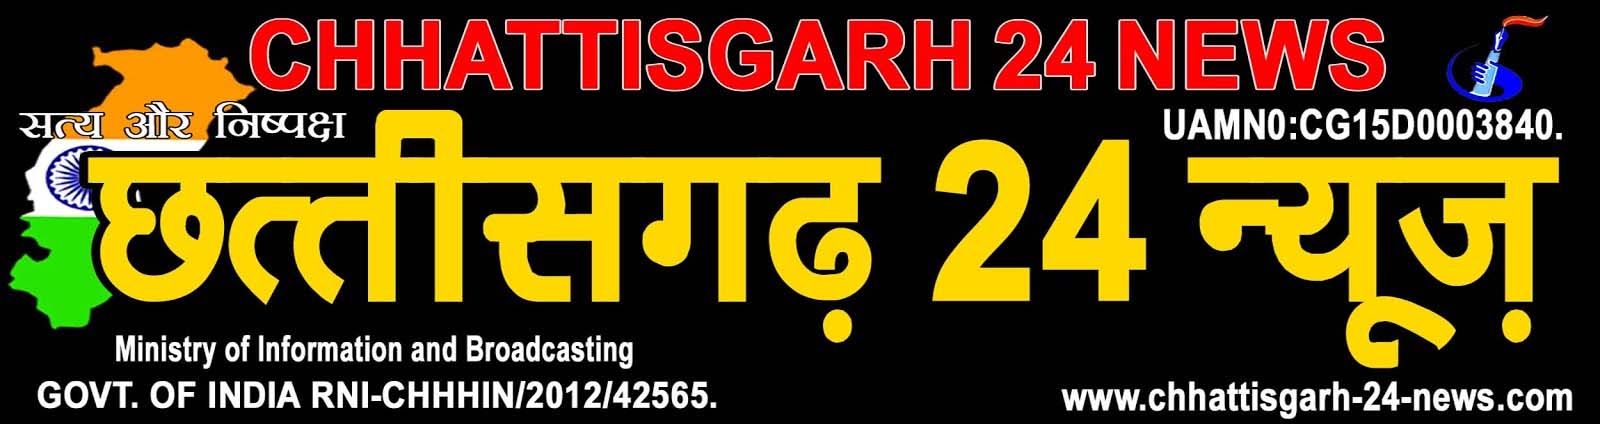 Chhattisgarh 24 News : Daily Hindi News, Chhattisgarh & India News